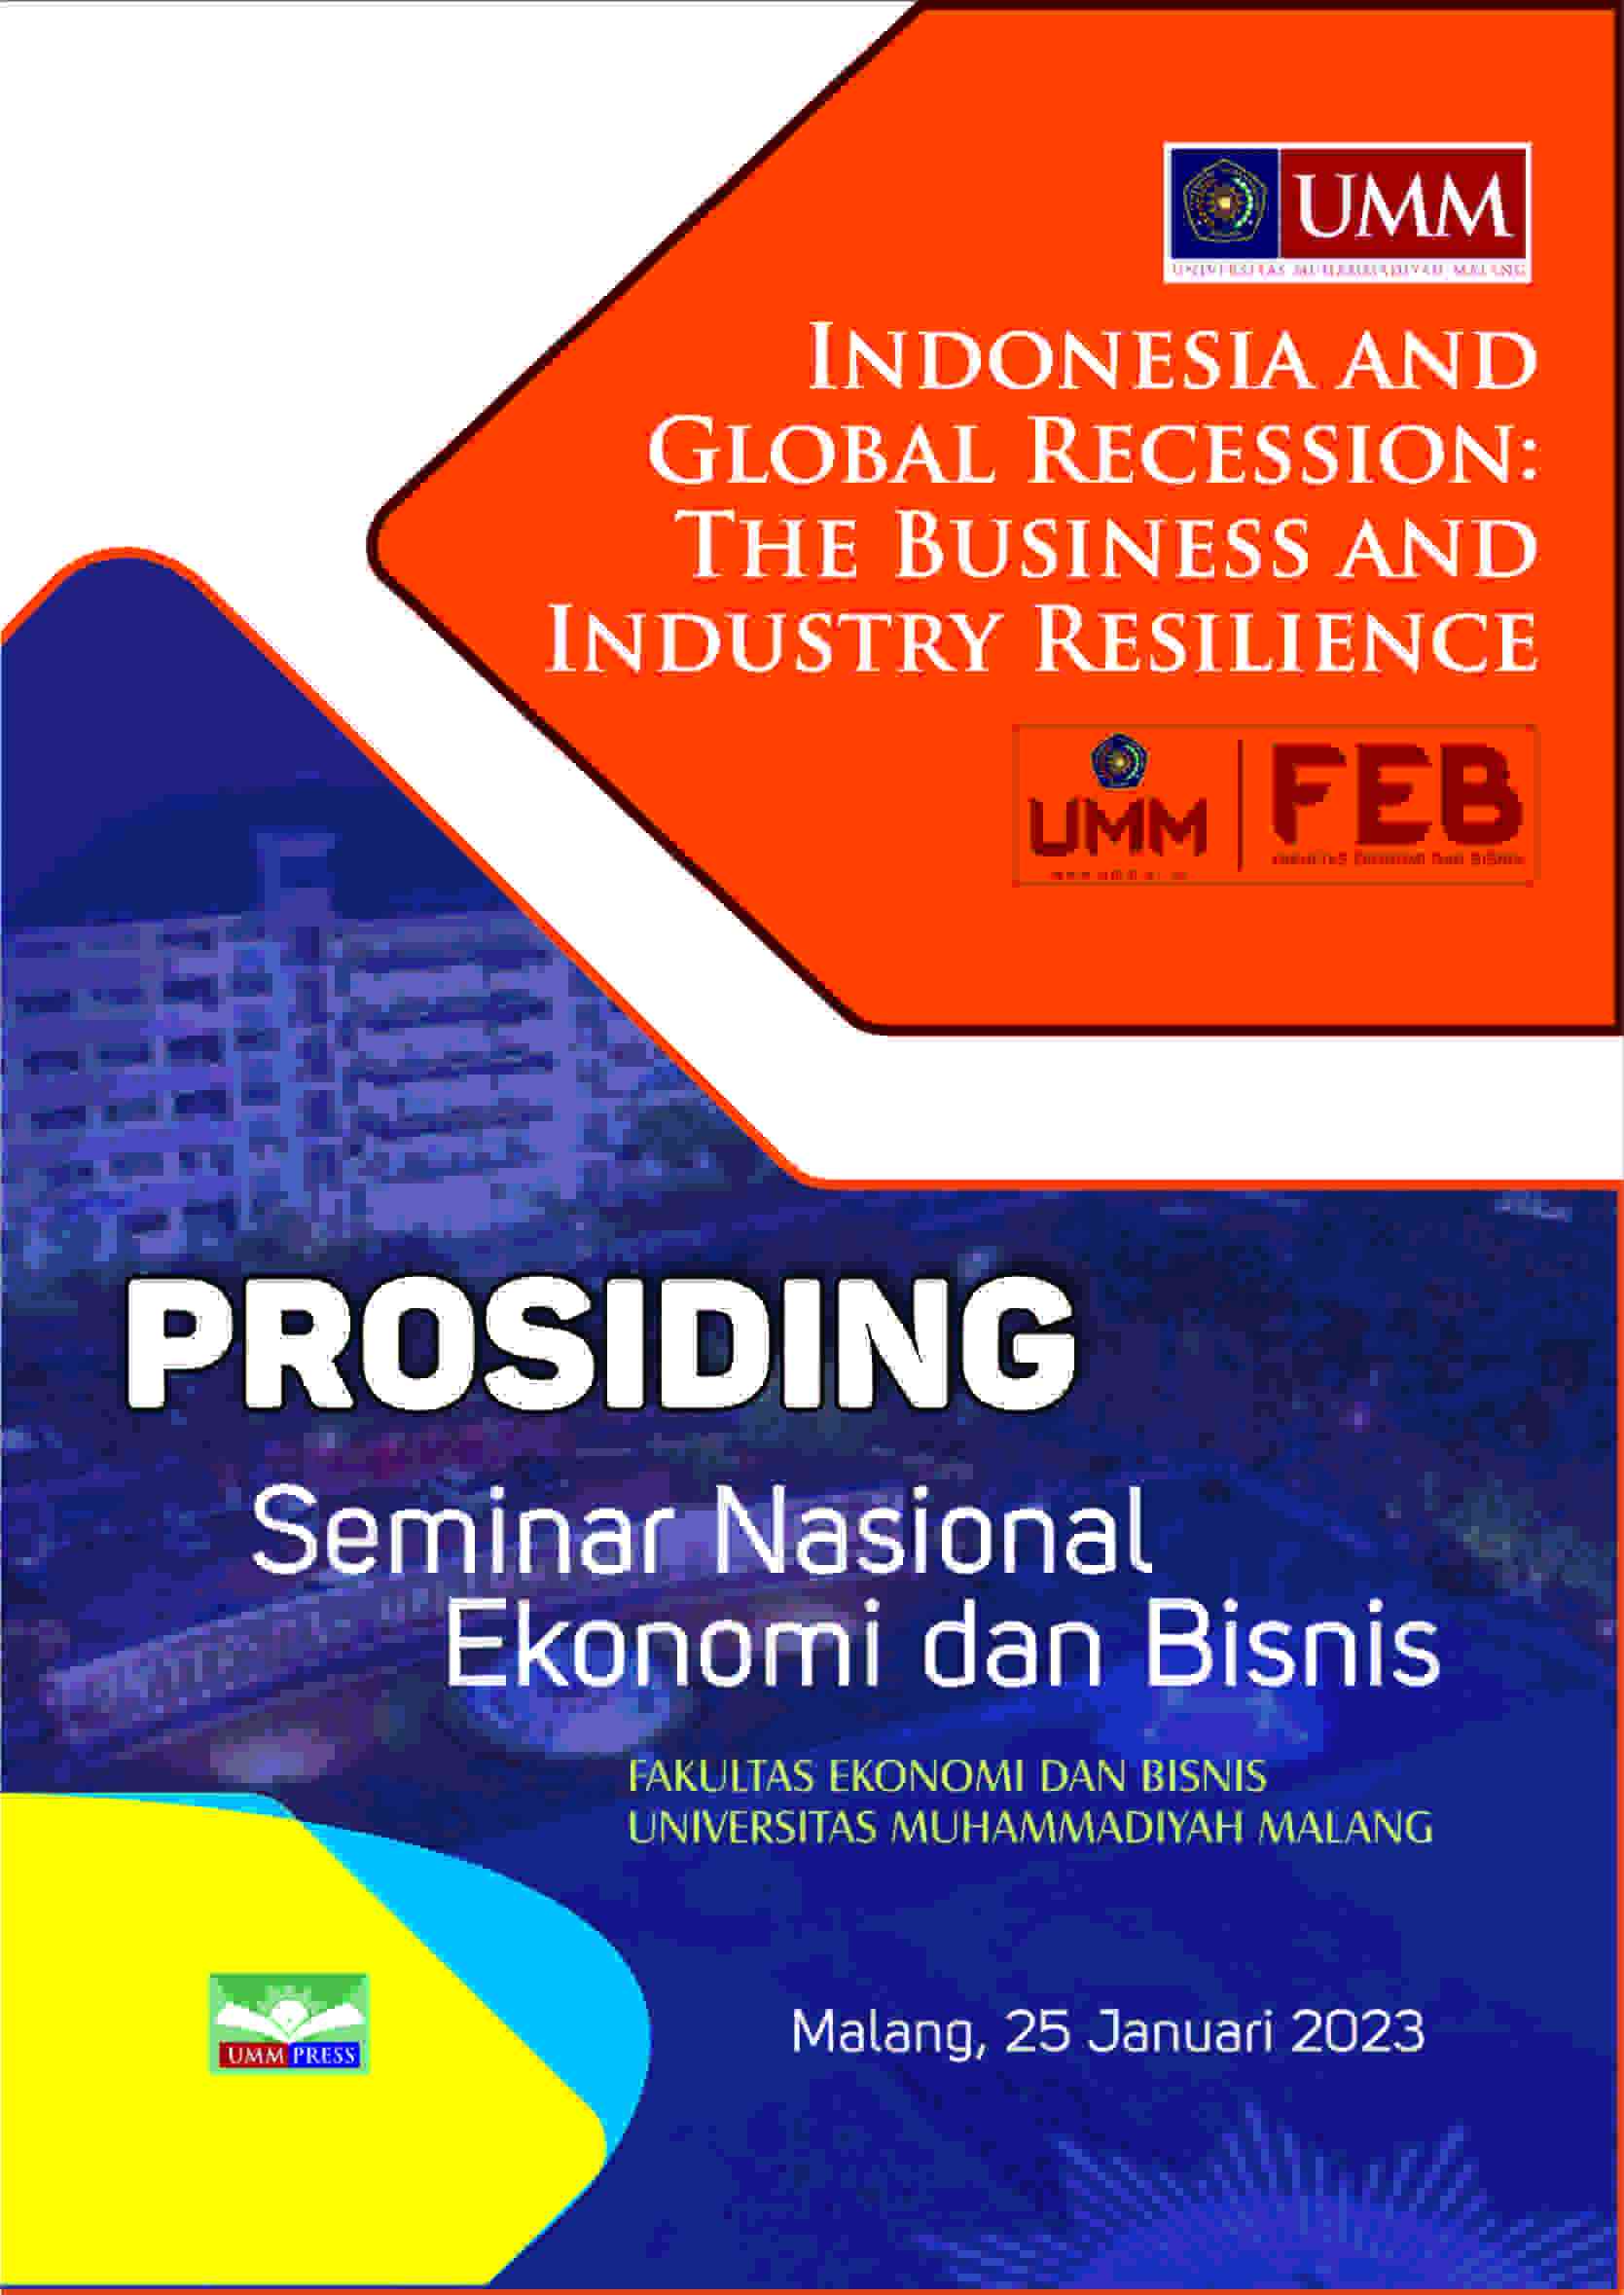 prosiding-seminar-nasional-ekonomi-dan-bisnis-2023-indonesia-and-global-recession-the-business-and